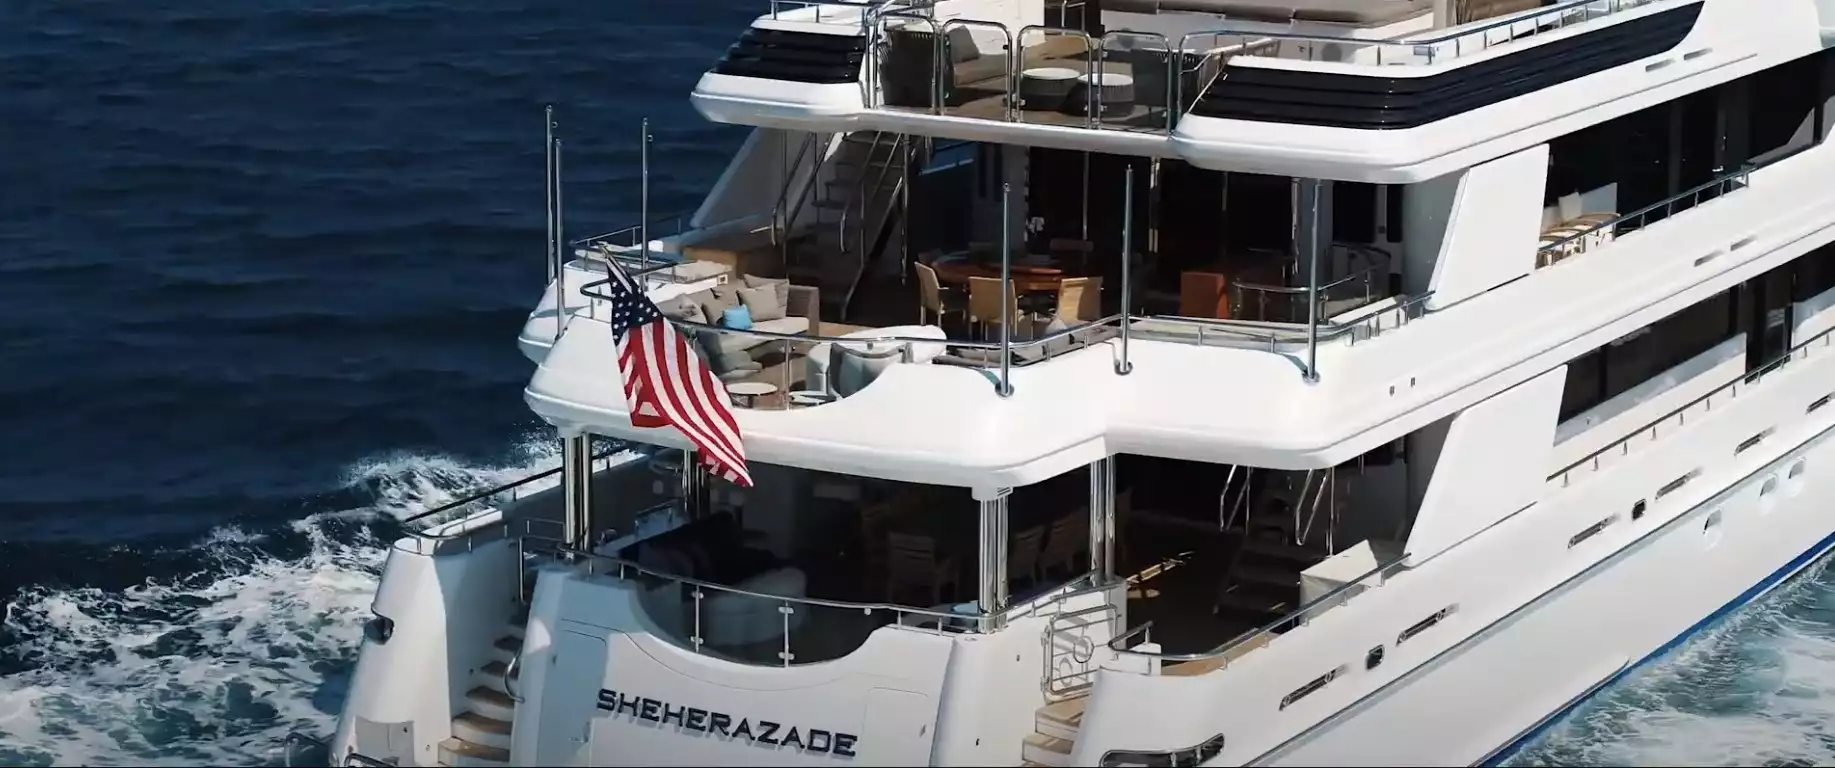 BACCHUS Yacht • WestPort • 2009 • ex Owner Donald Sussman (SHEHERAZADE)